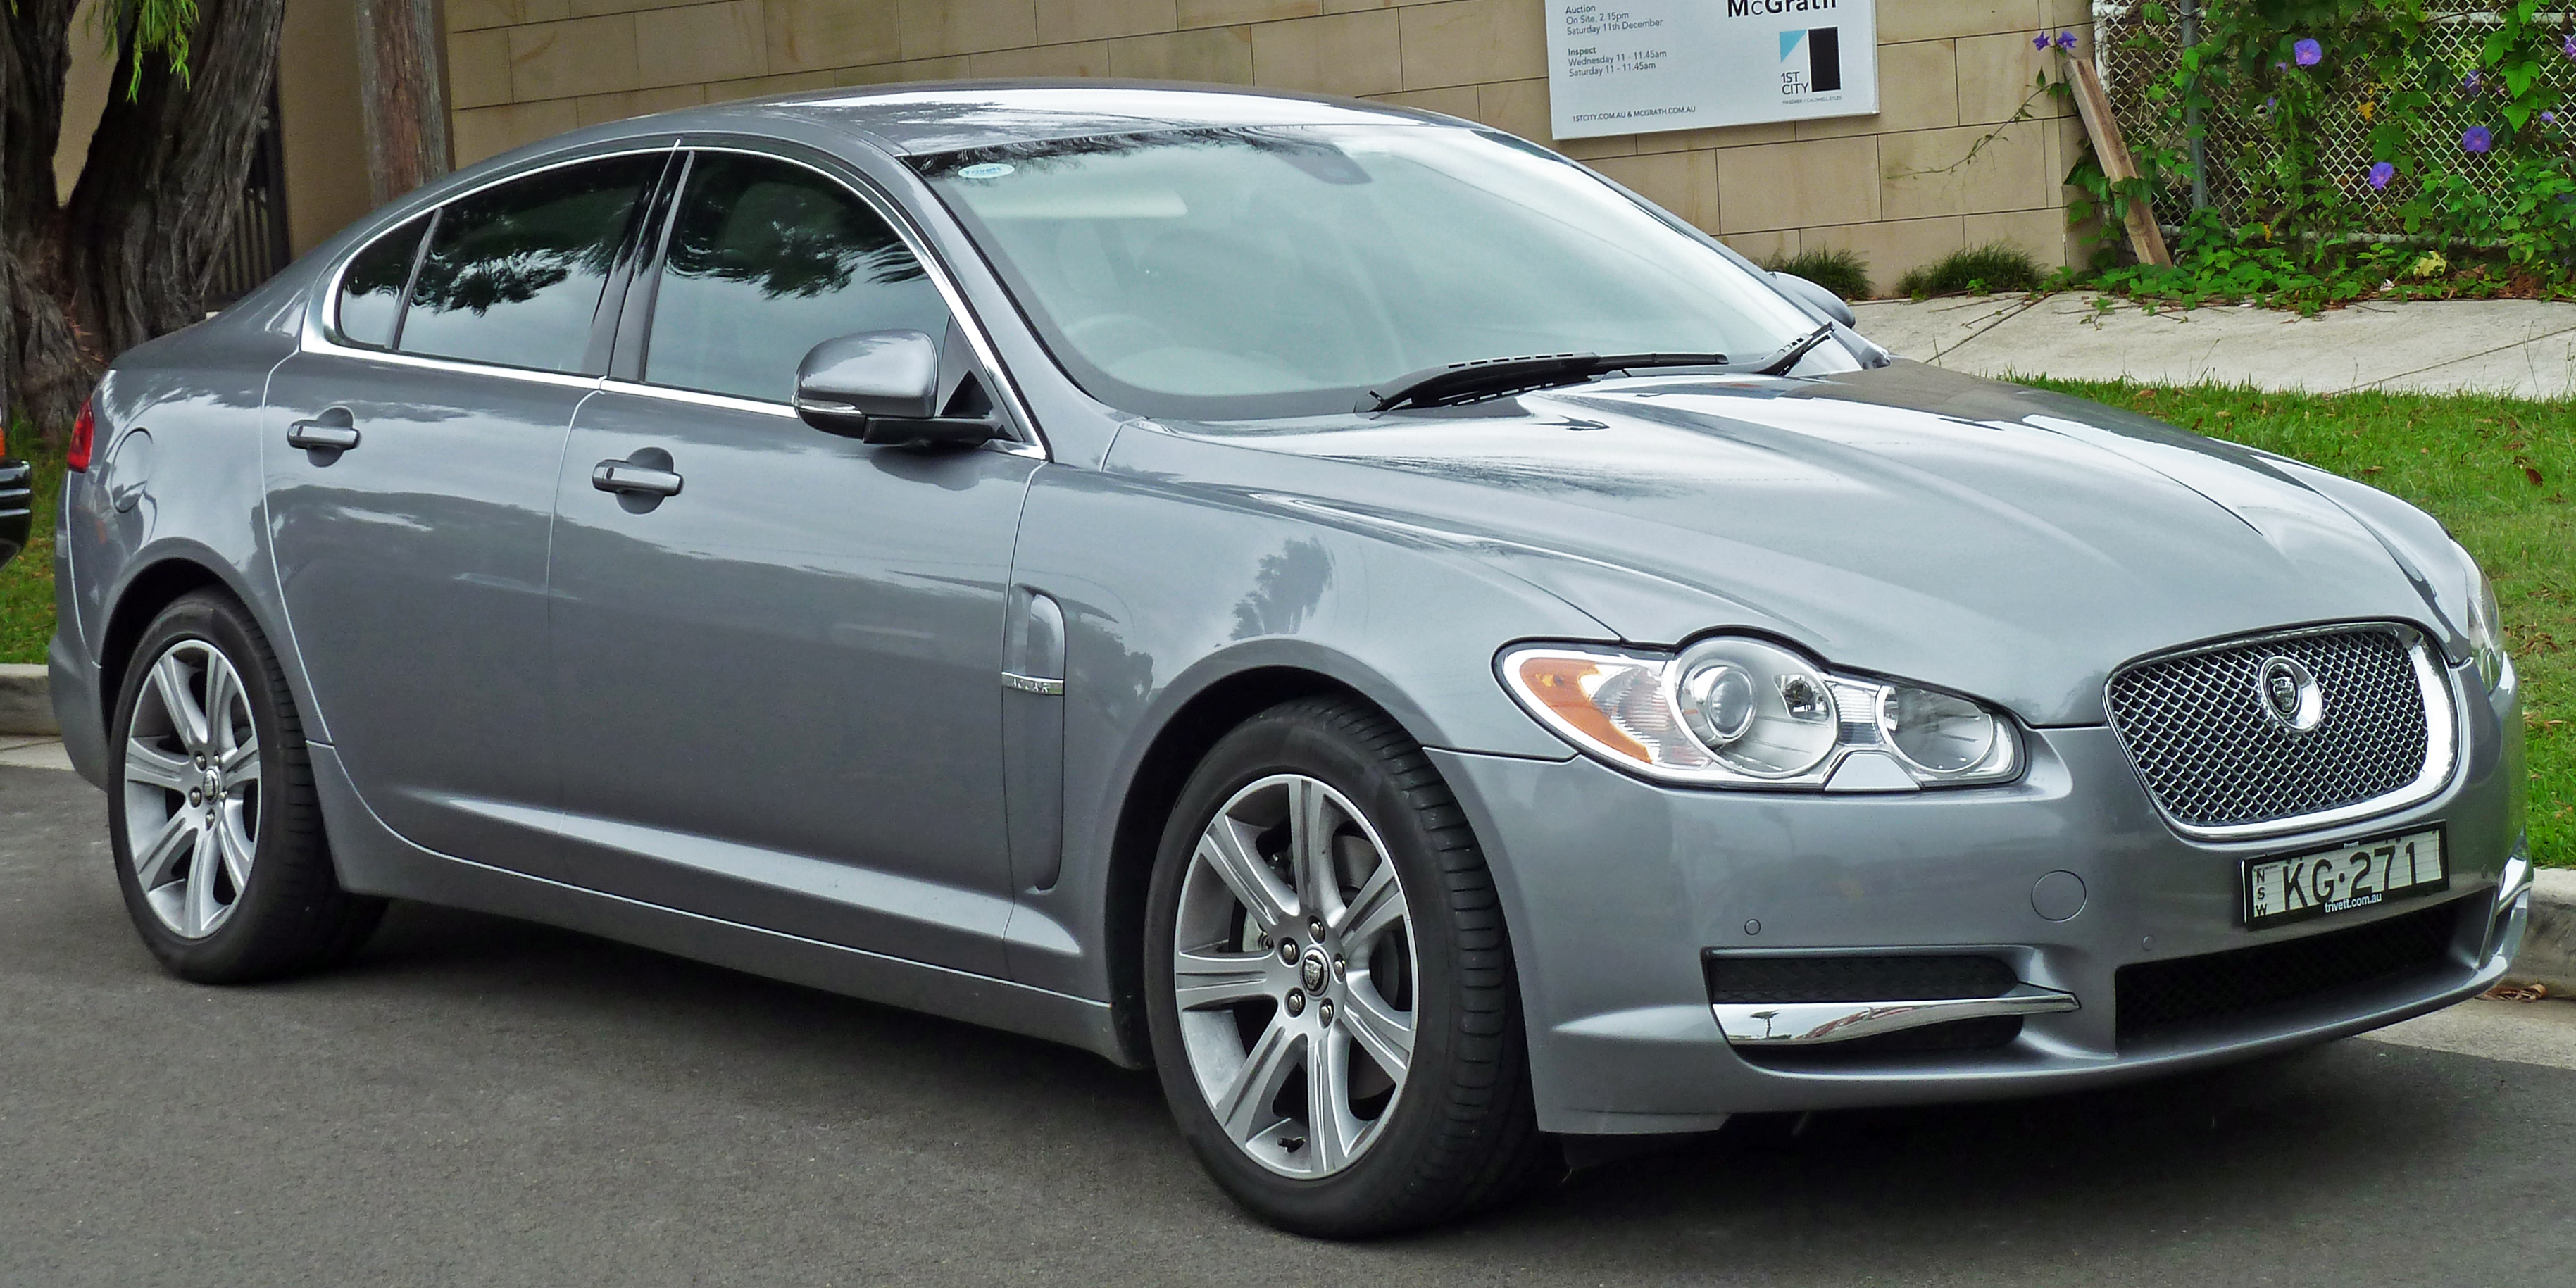 2008-2010 Jaguar XF (X250) Luxury sedan (2011-01-13)